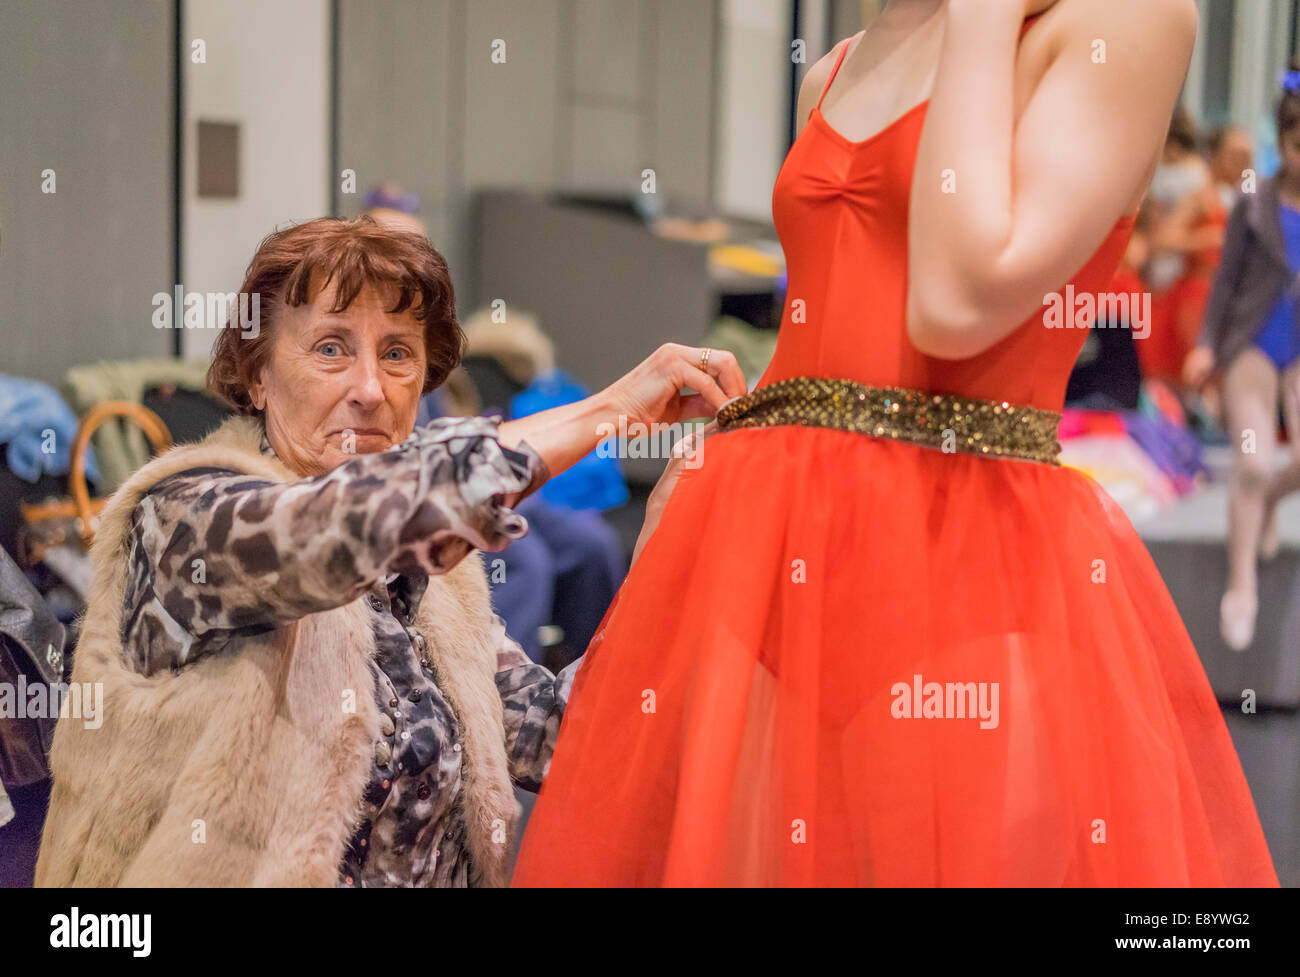 Donna alterando il costume di una ballerina, il festival dei bambini, harpa, Reykjavik, Islanda Foto Stock